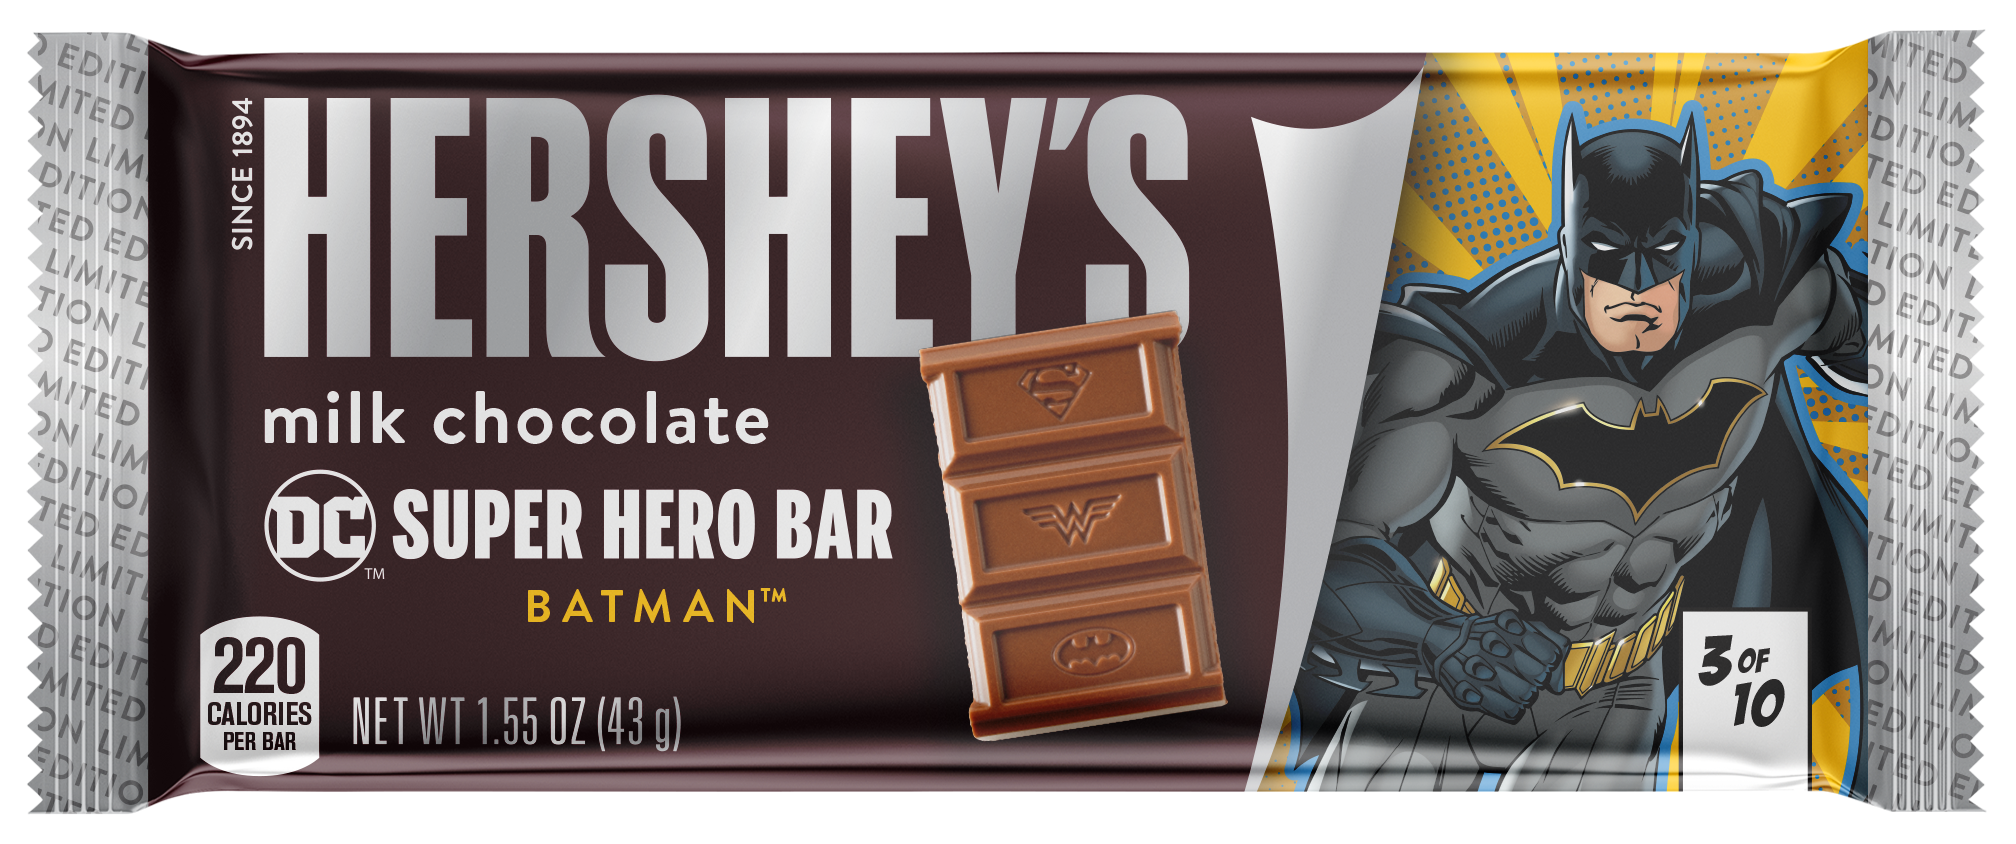 Hershey Batman milk chocolate bar